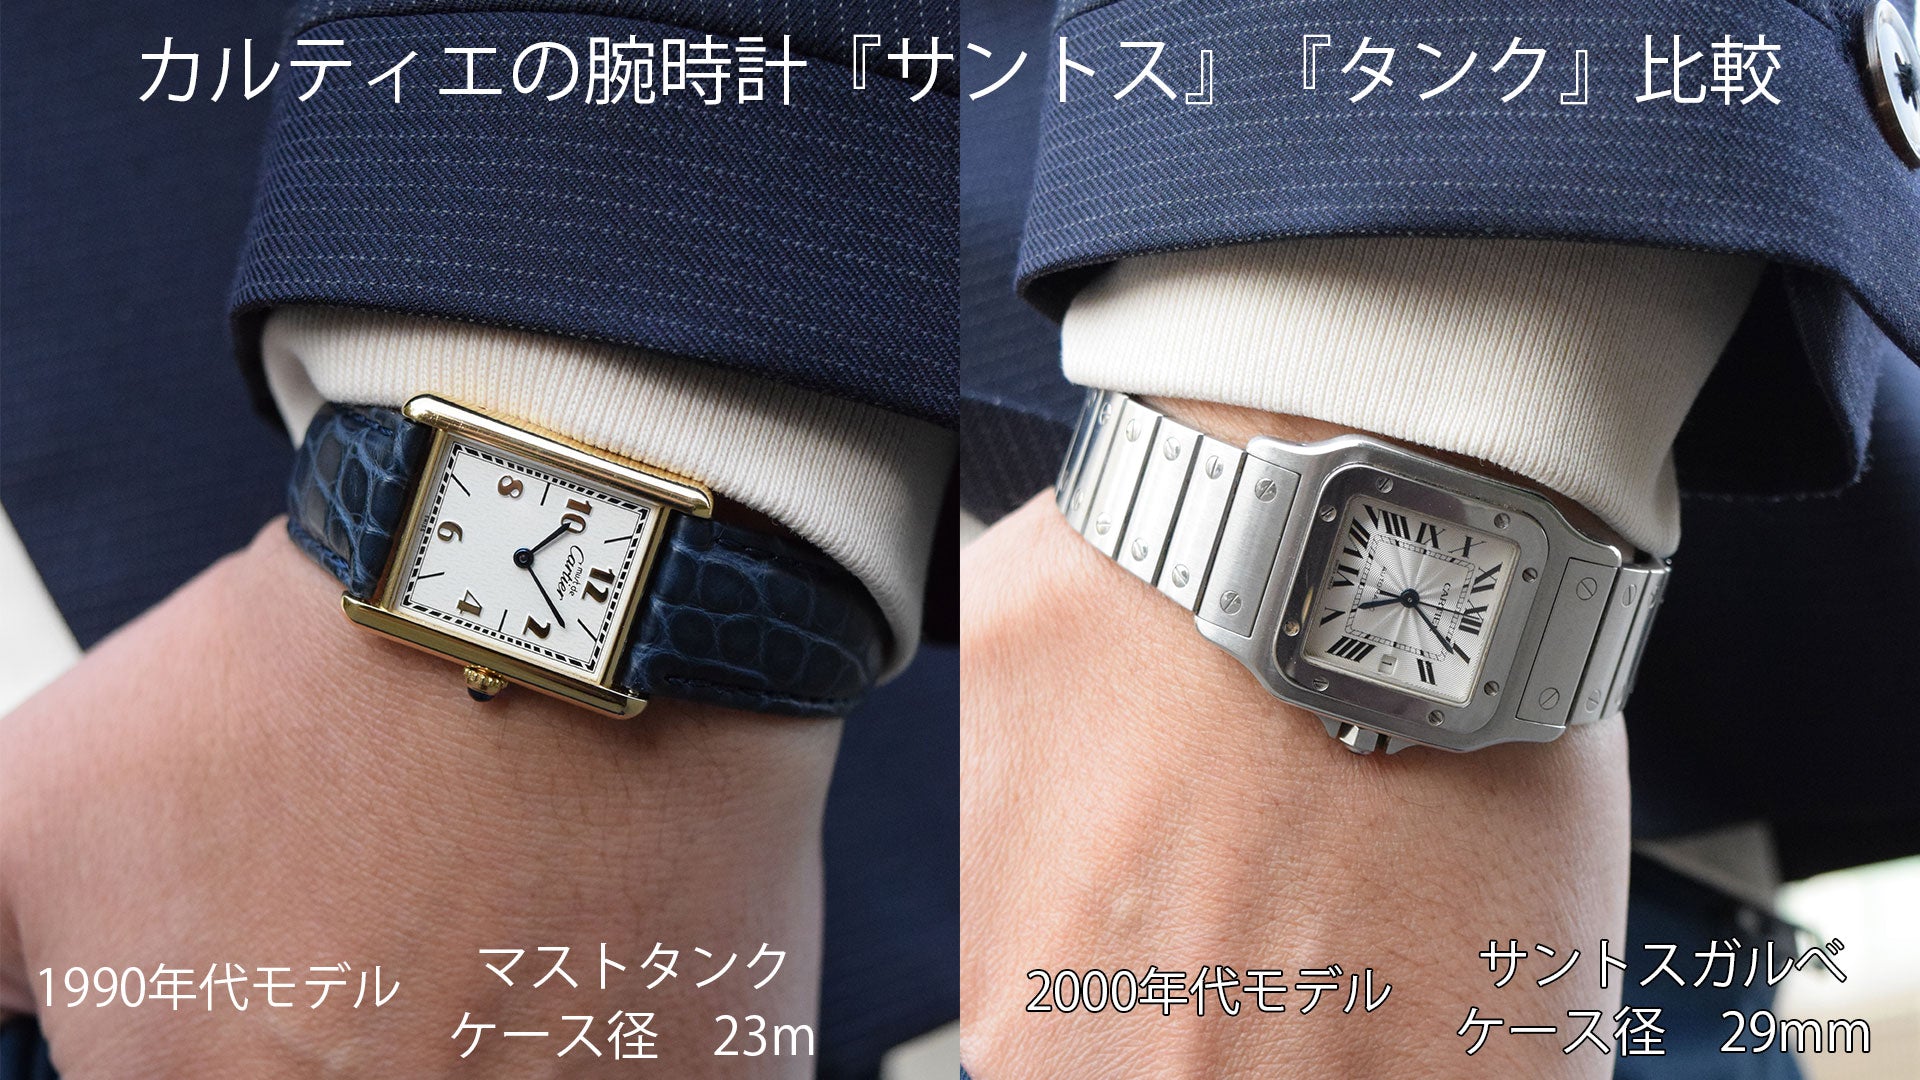 カルティエの腕時計『サントス』『タンク』比較